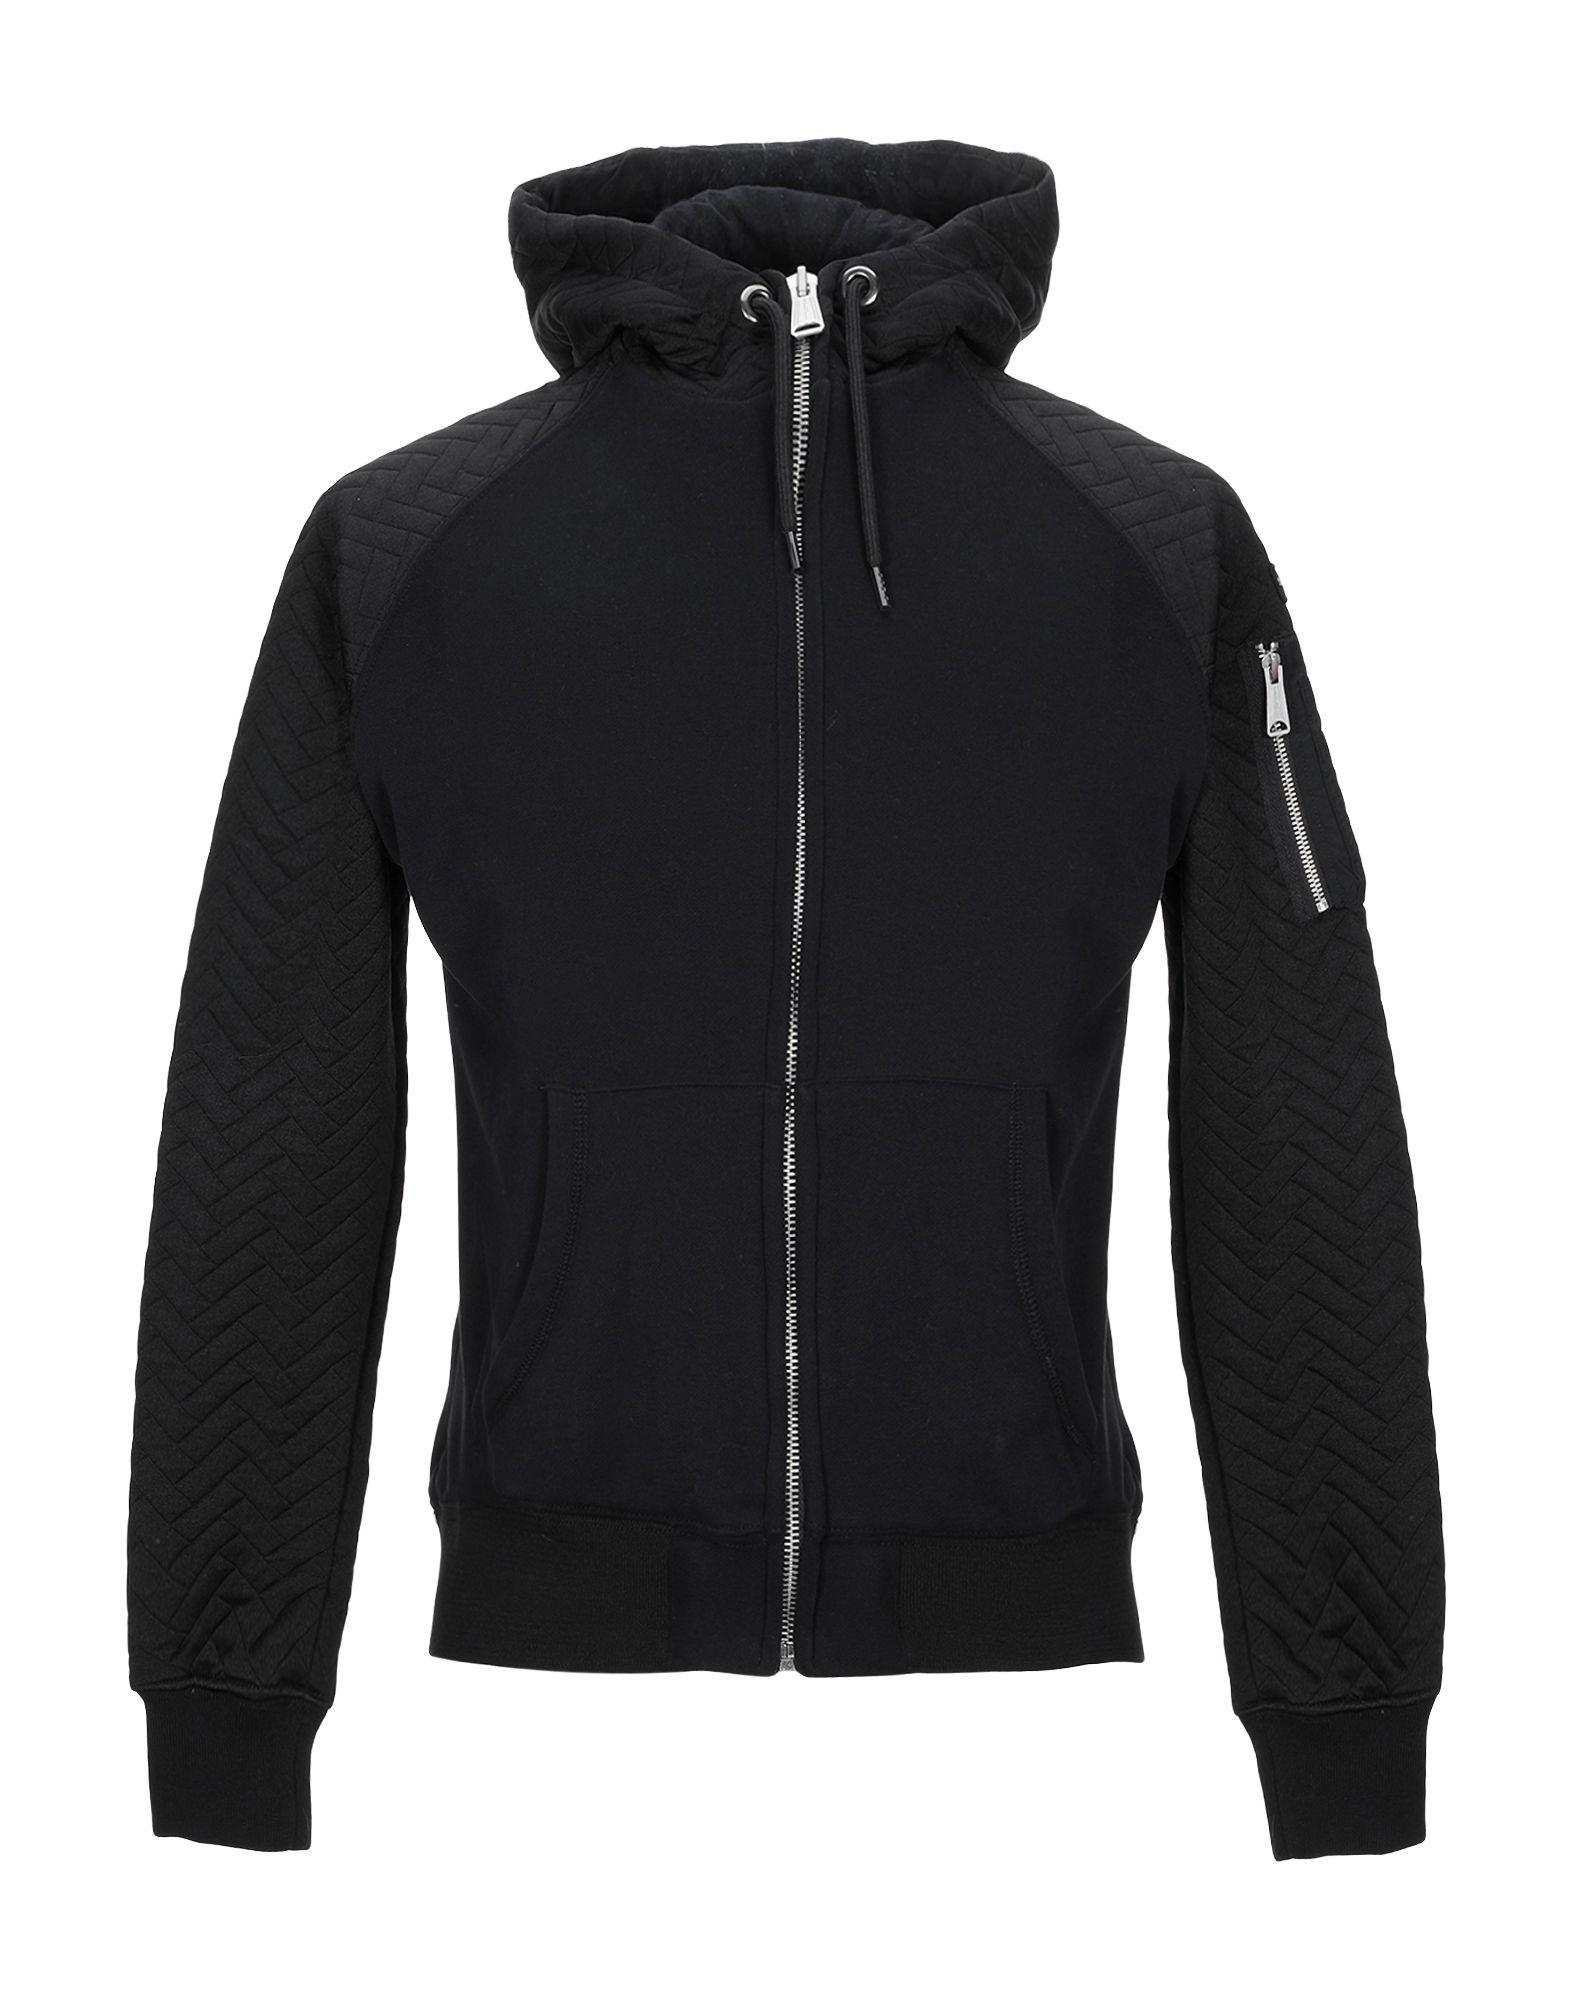 Schott Nyc Sweatshirt in Black for Men - Lyst